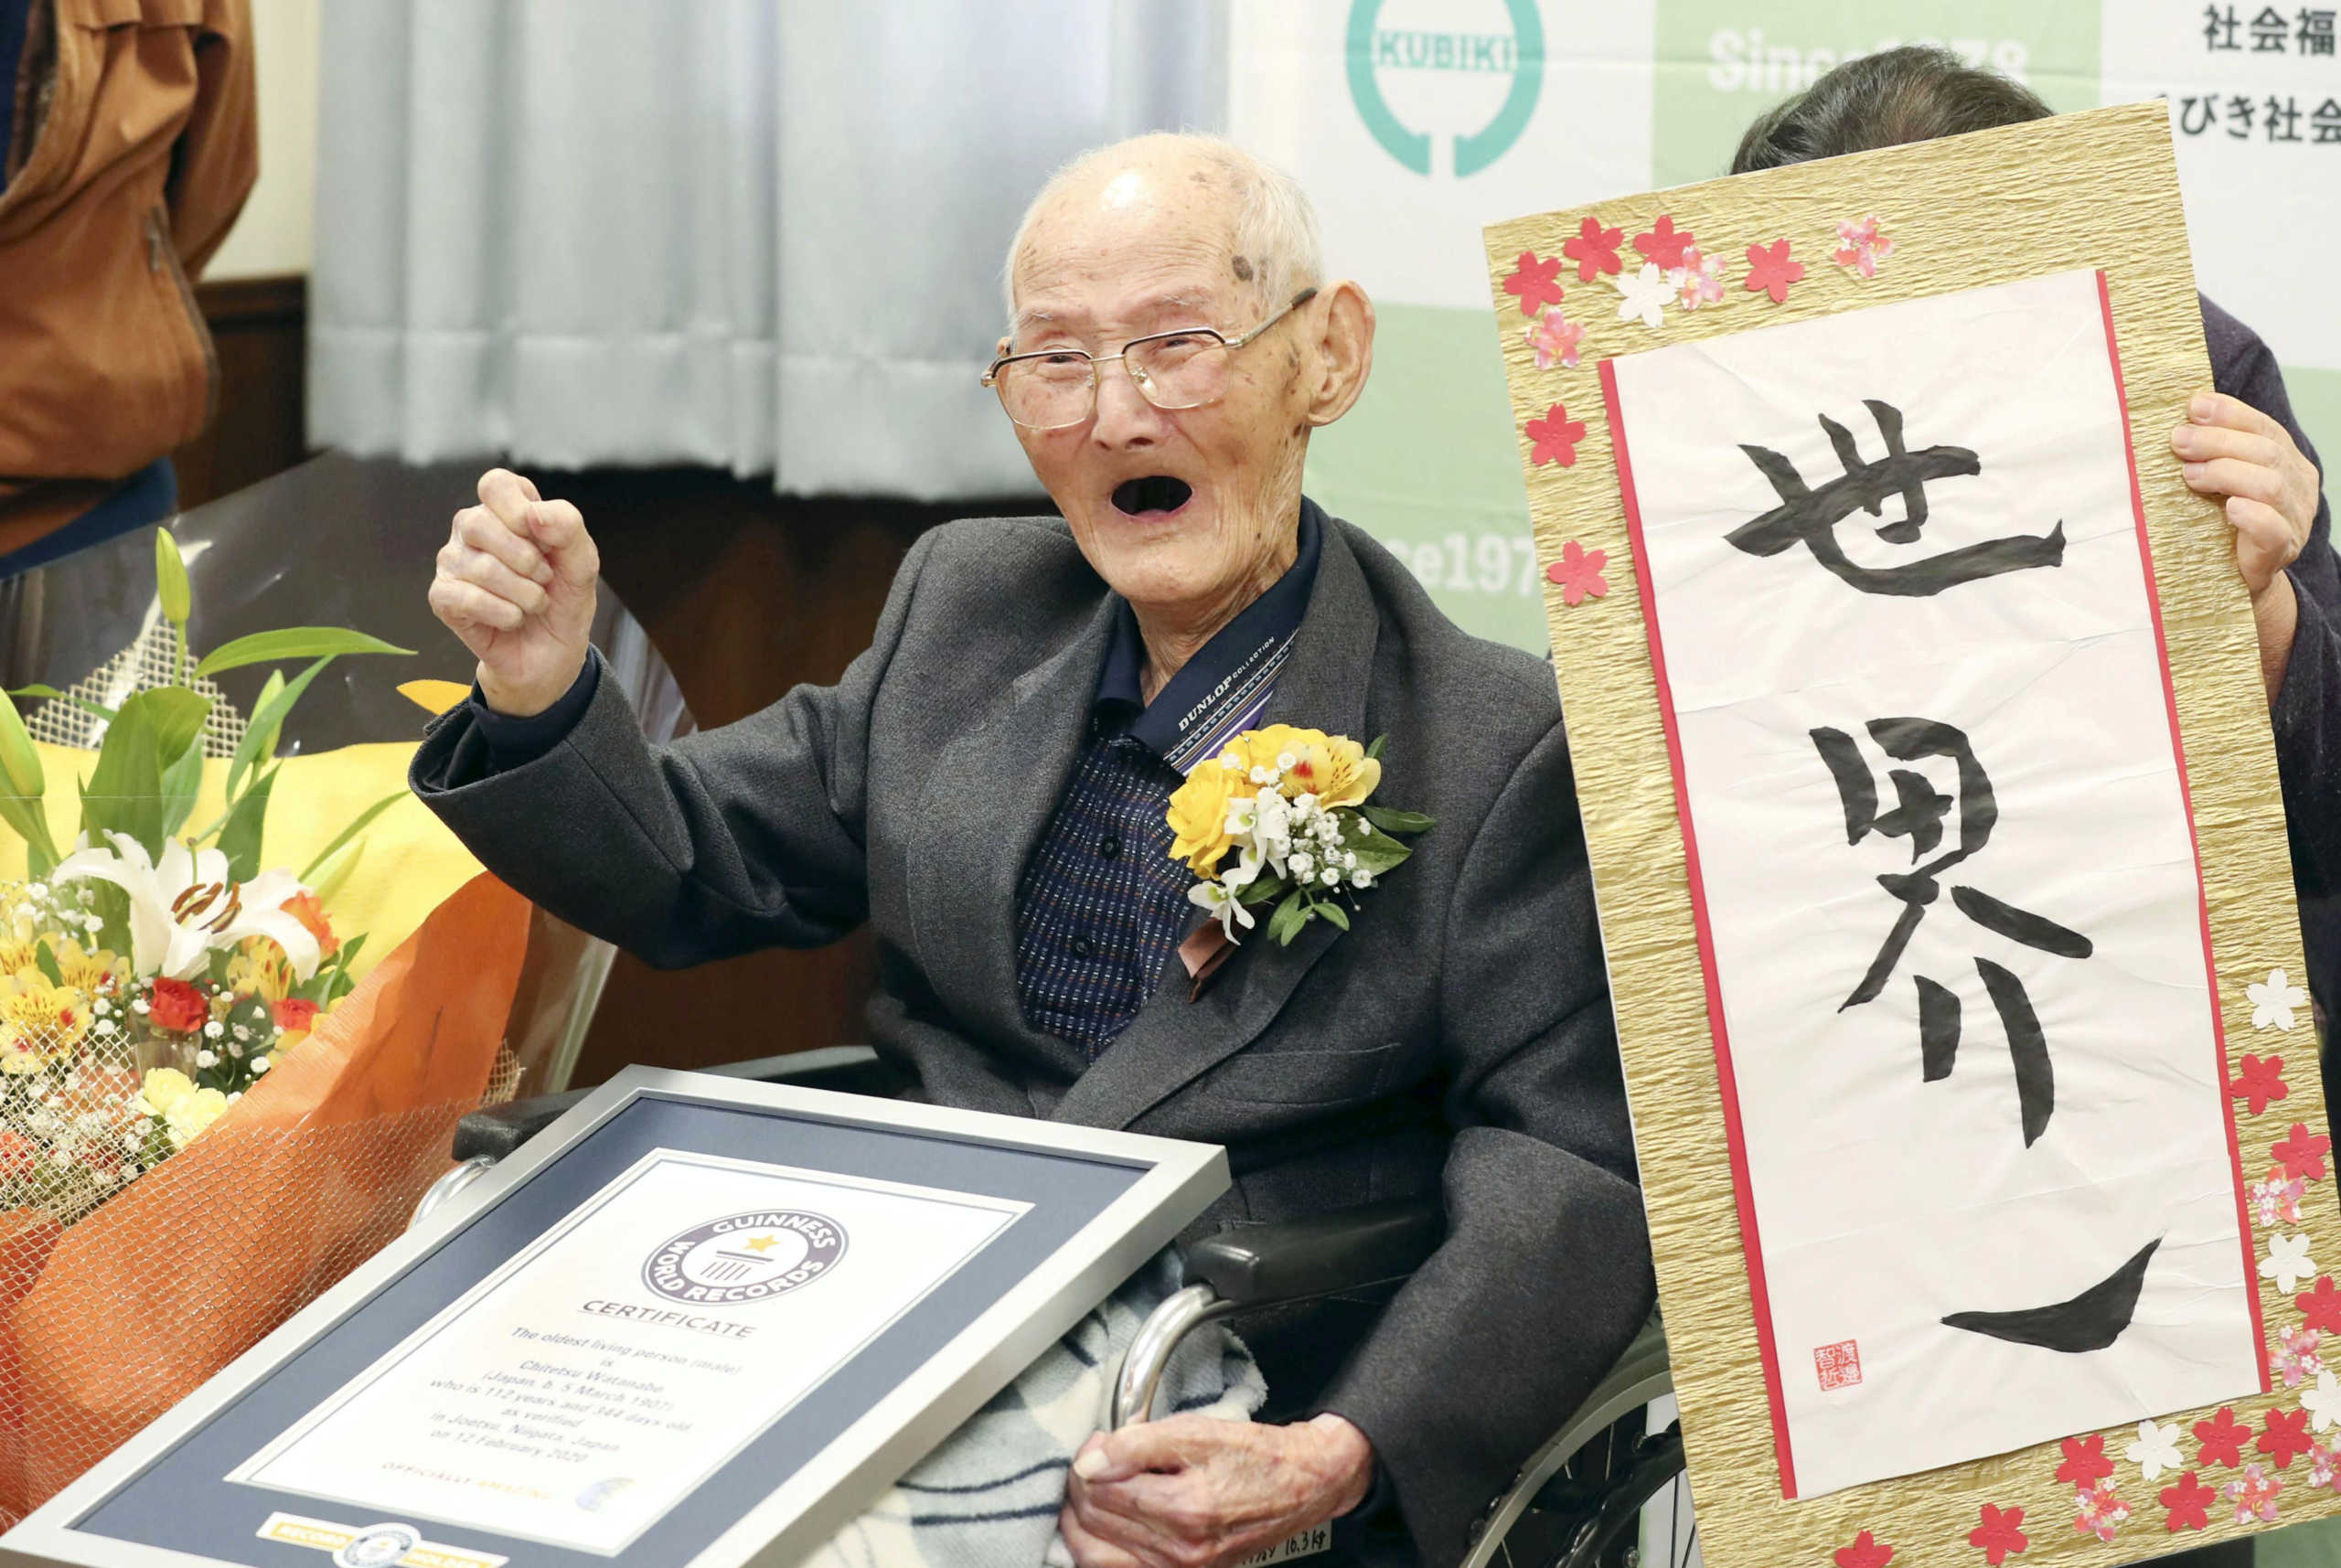 Ιαπωνία: Πέθανε ο γηραιότερος άνθρωπος στον κόσμο